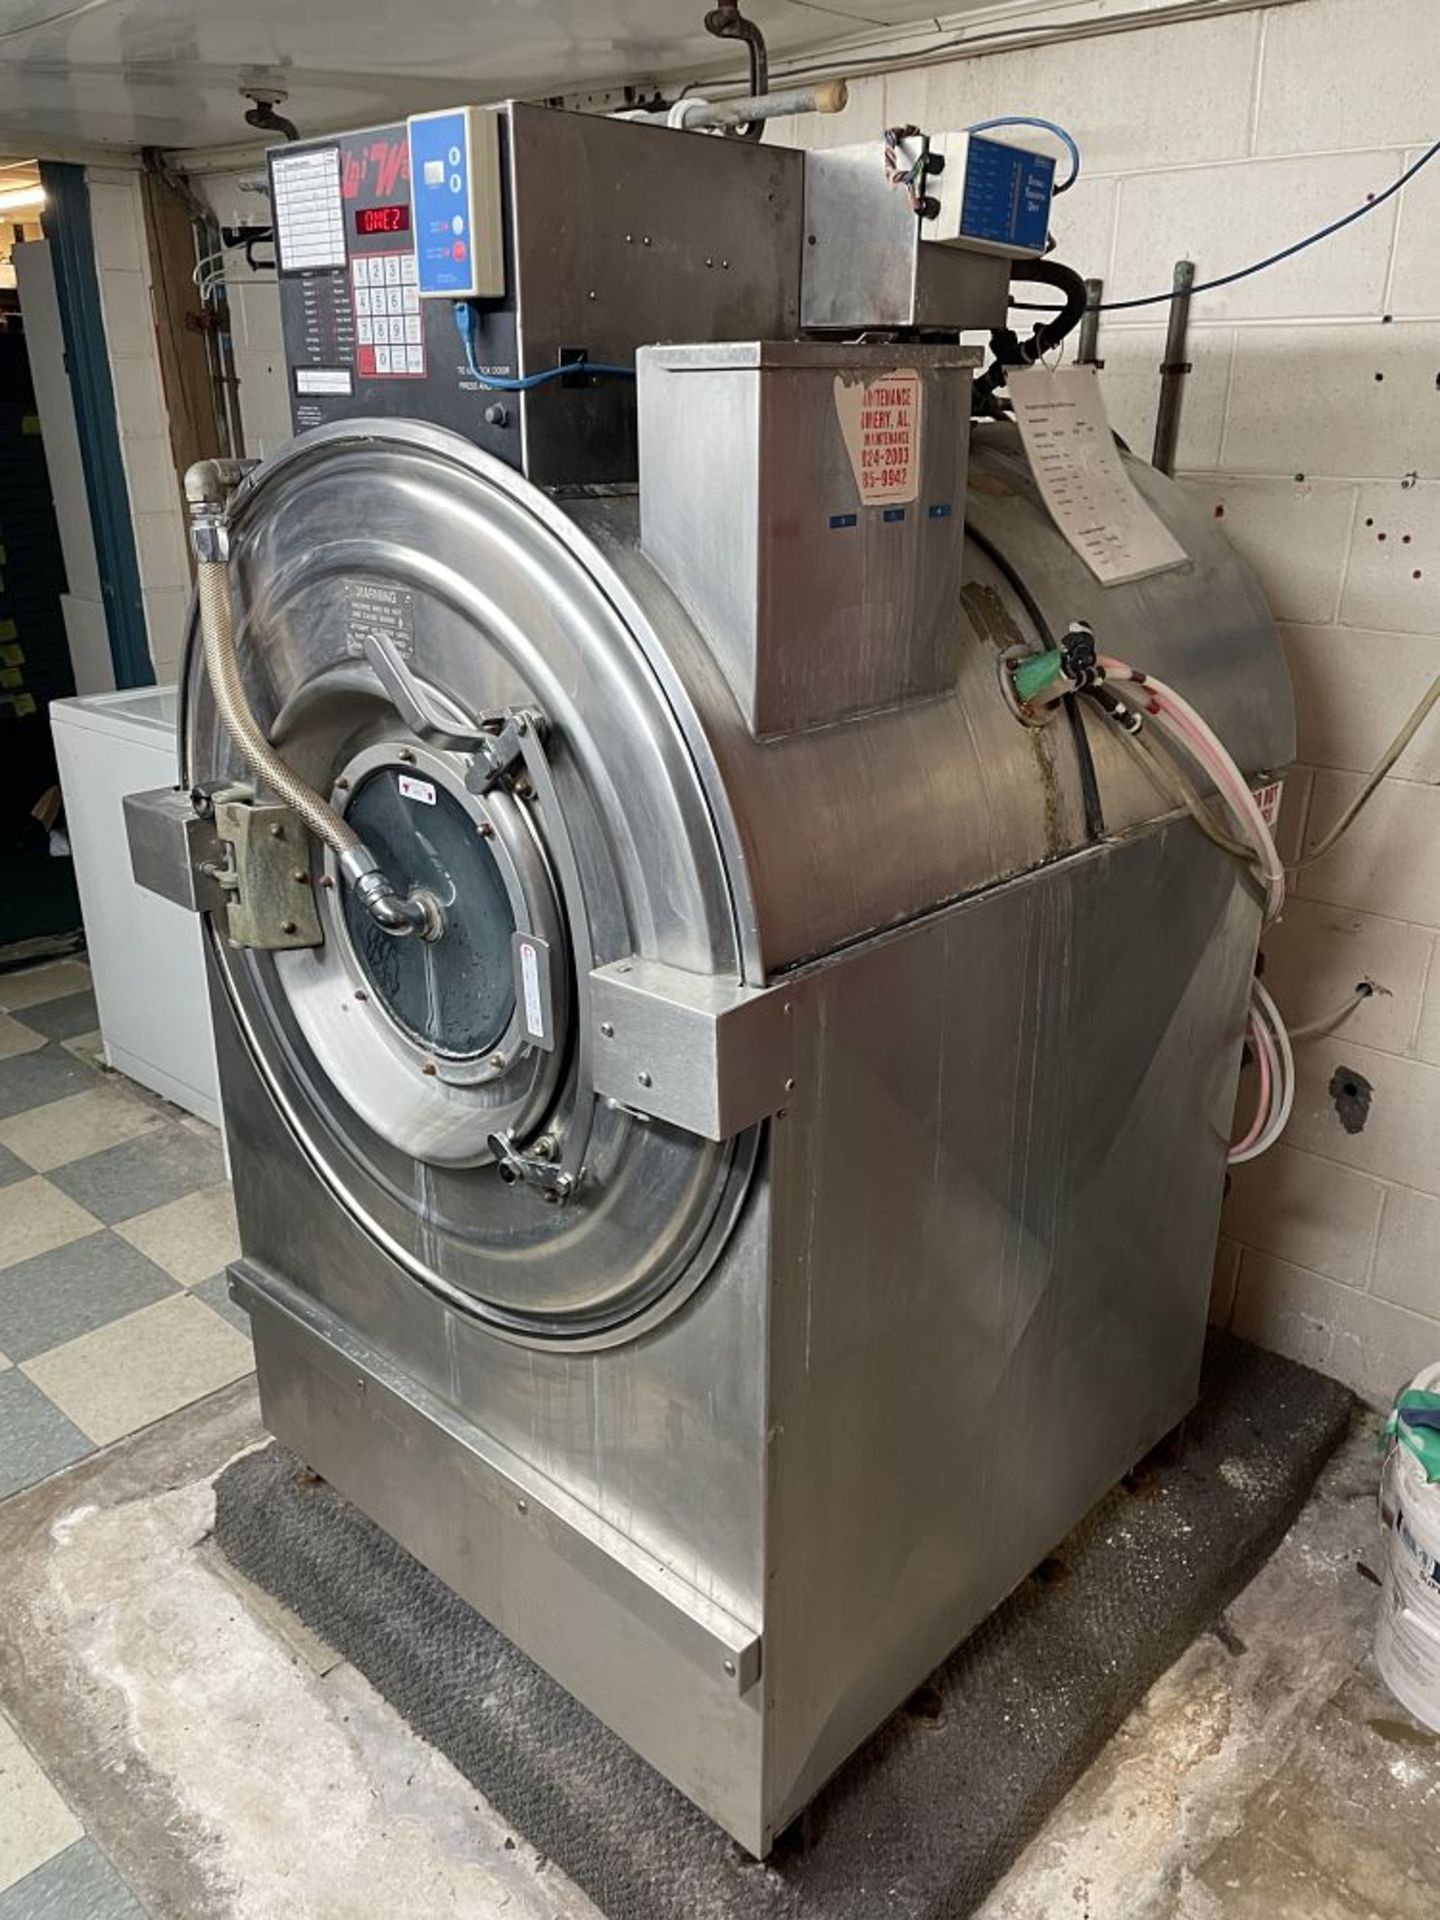 UniWash Commercial Washing Machine - Image 3 of 4